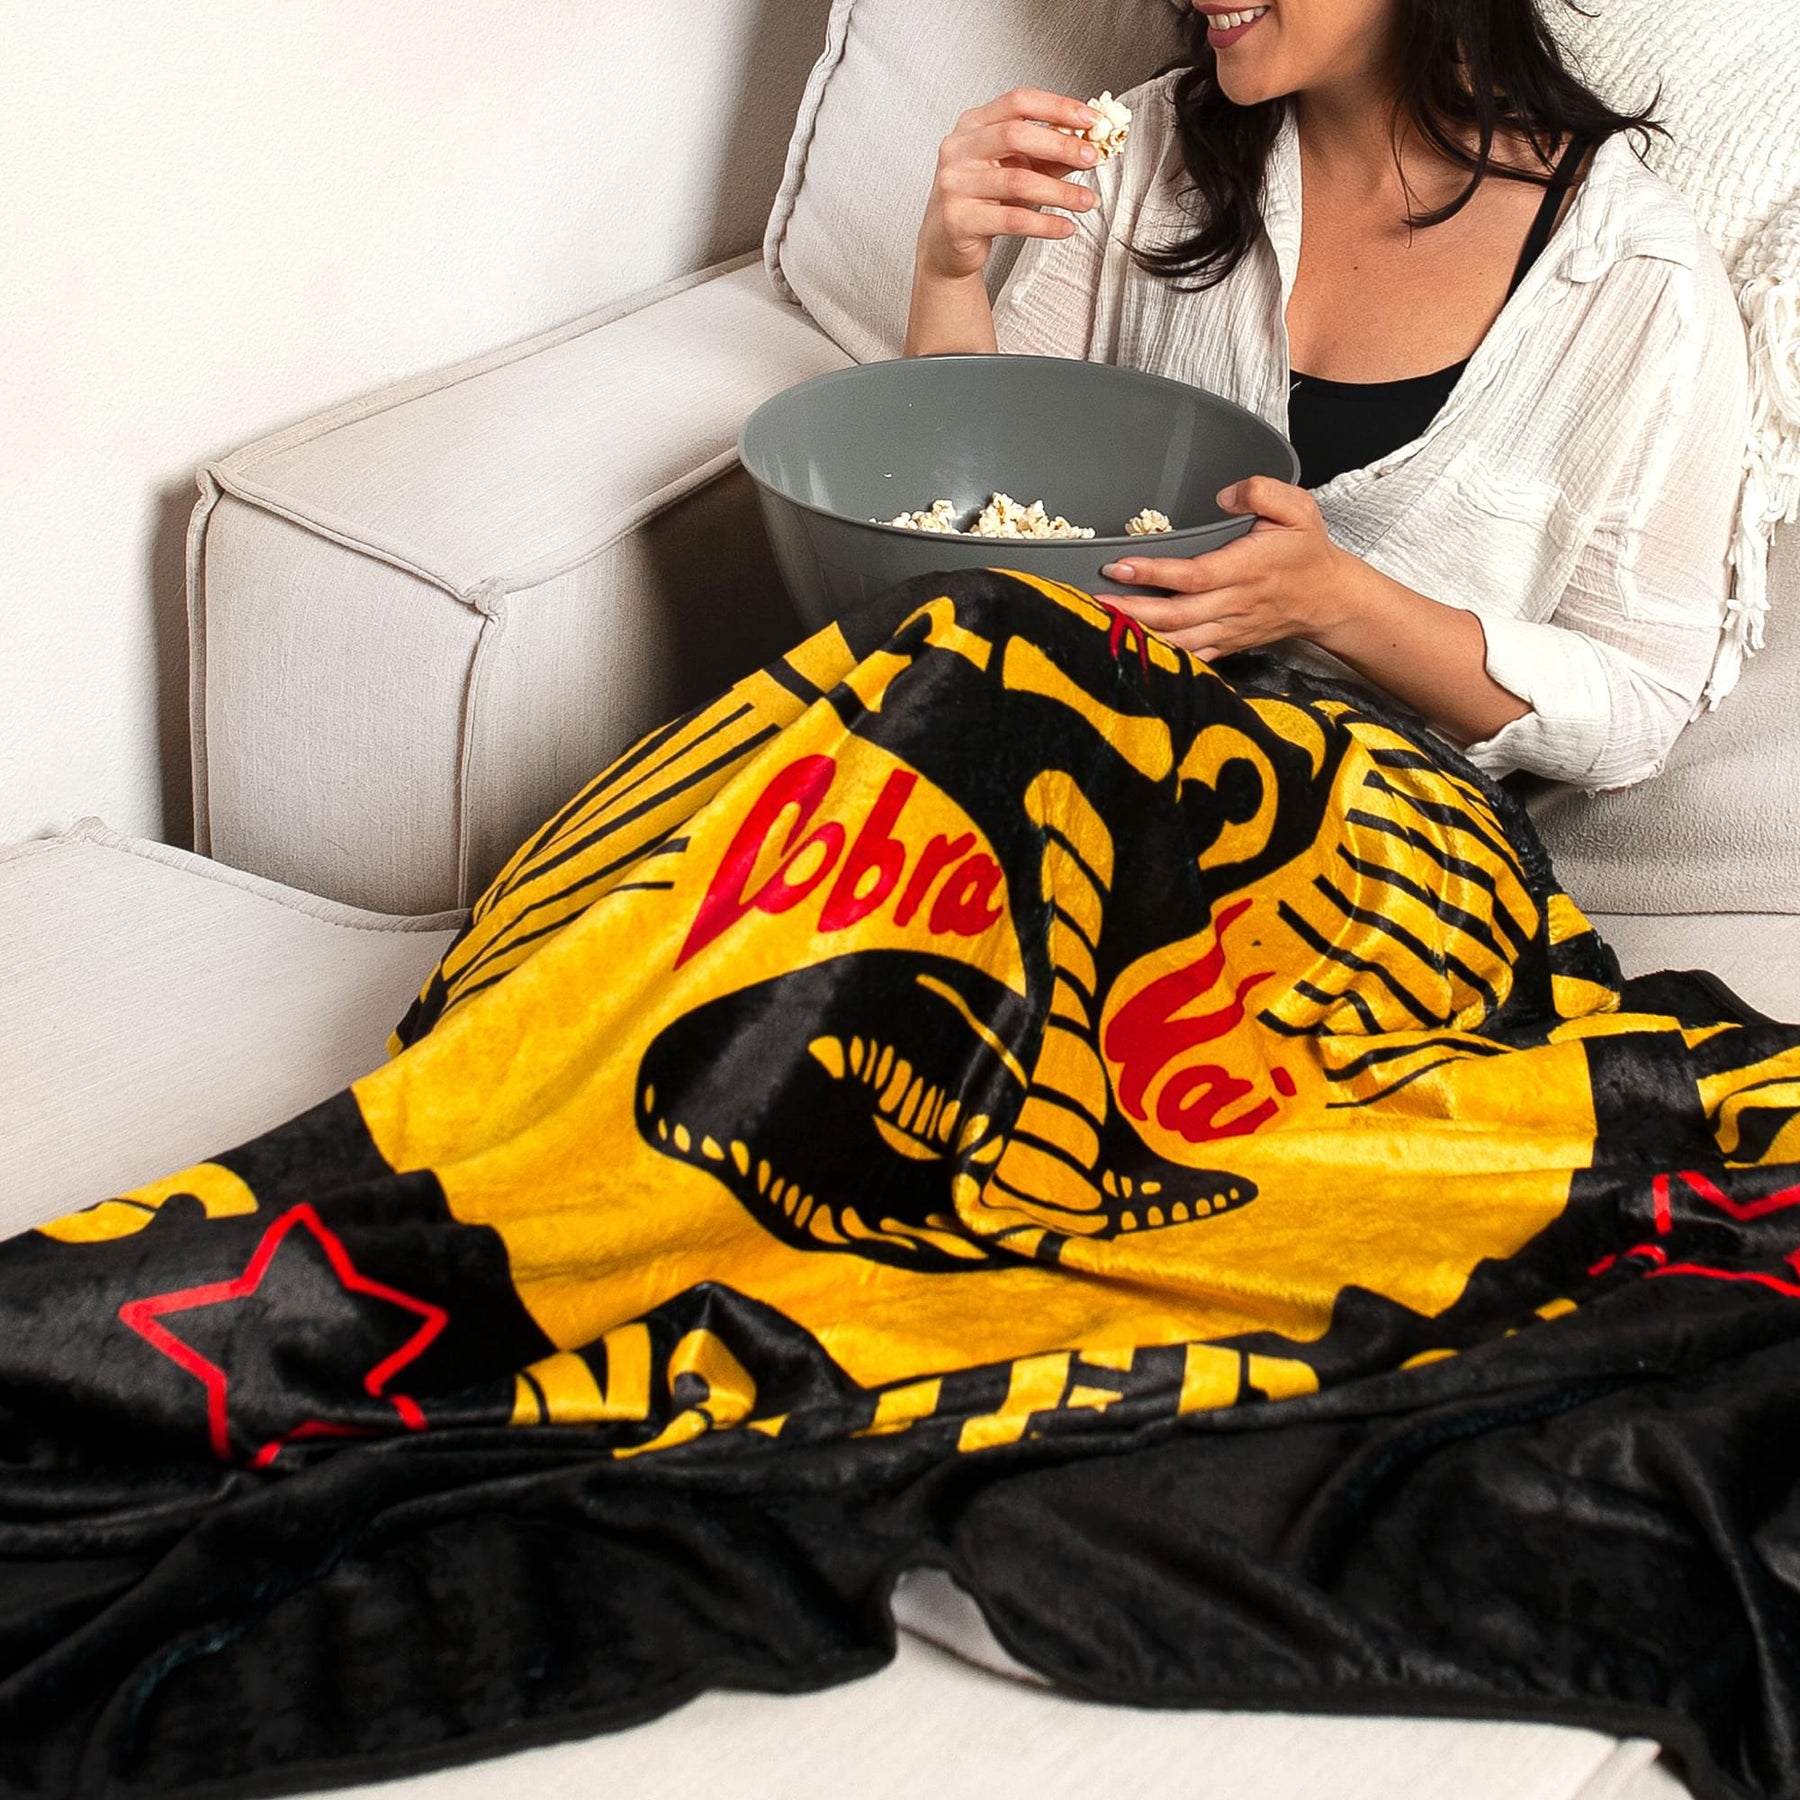 Cobra Kai "Strike First" Fleece Throw Blanket | 45 x 60 Inches